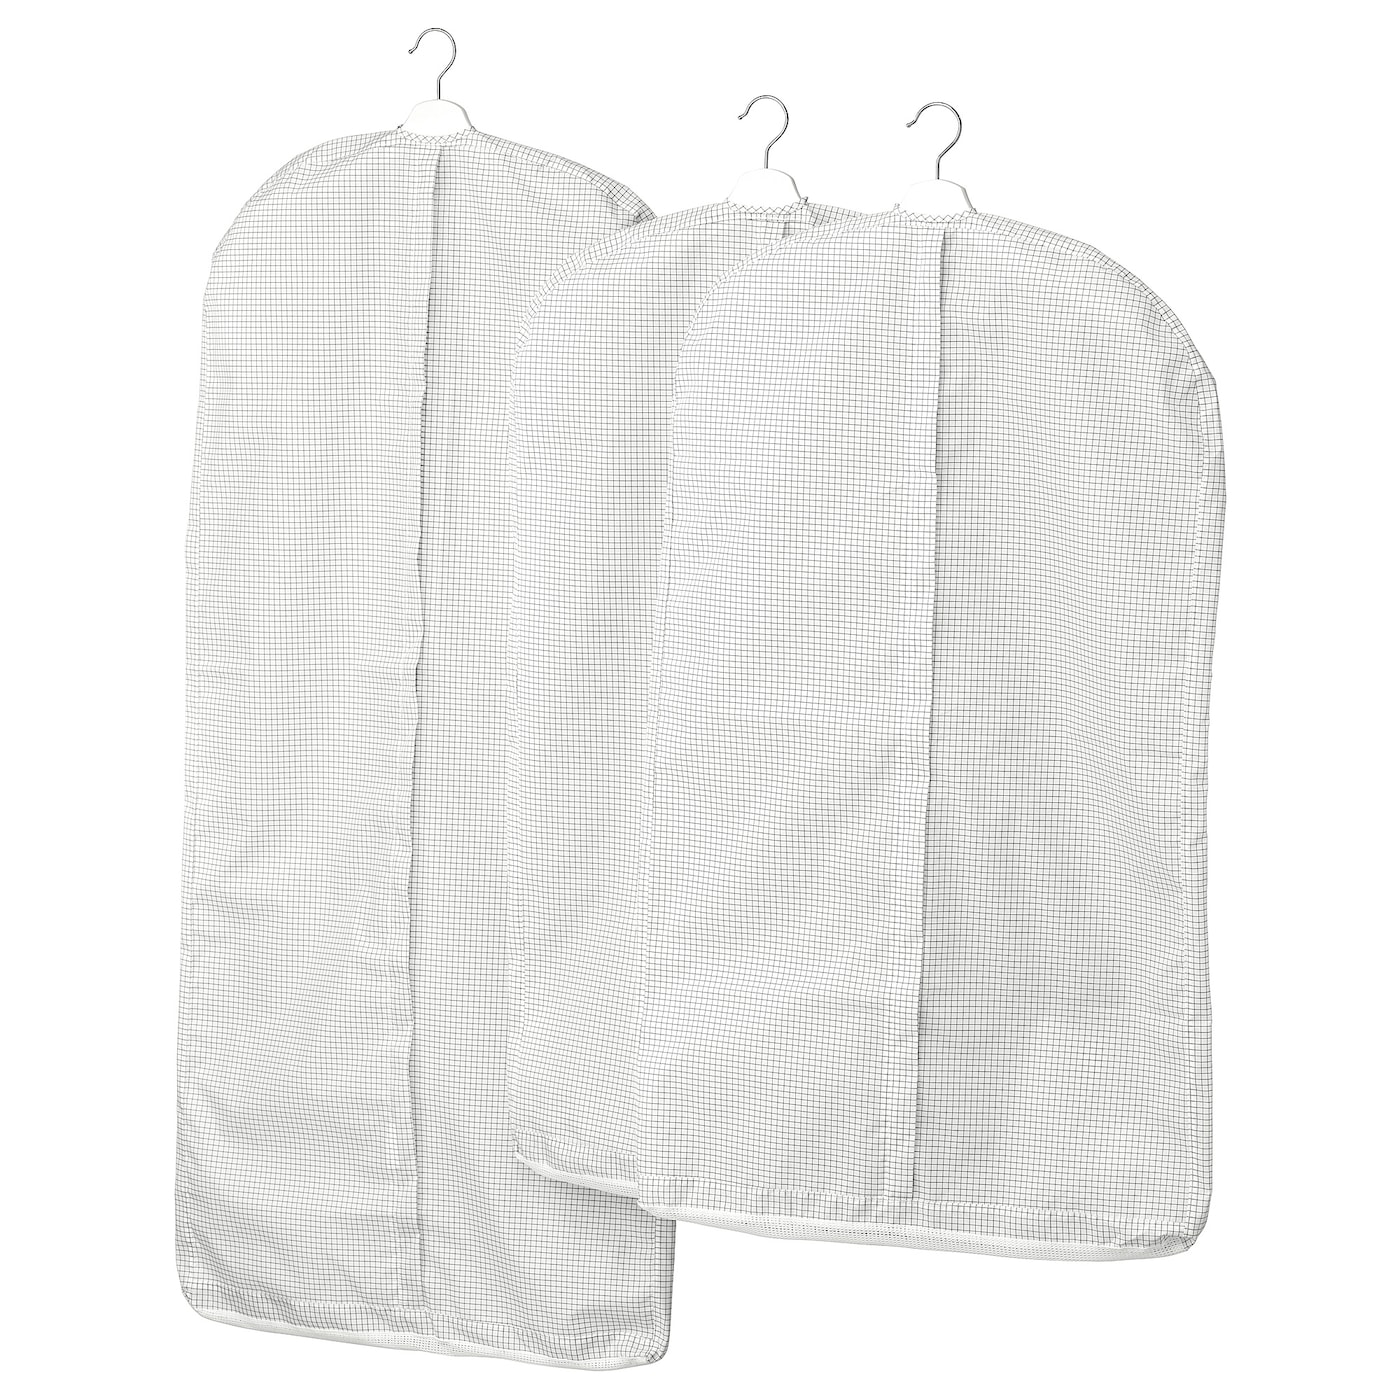 STUK СТУК Чехол для одежды, 3 штуки, белый/серый IKEA stuk стук органайзер белый 26x20x6 см ikea